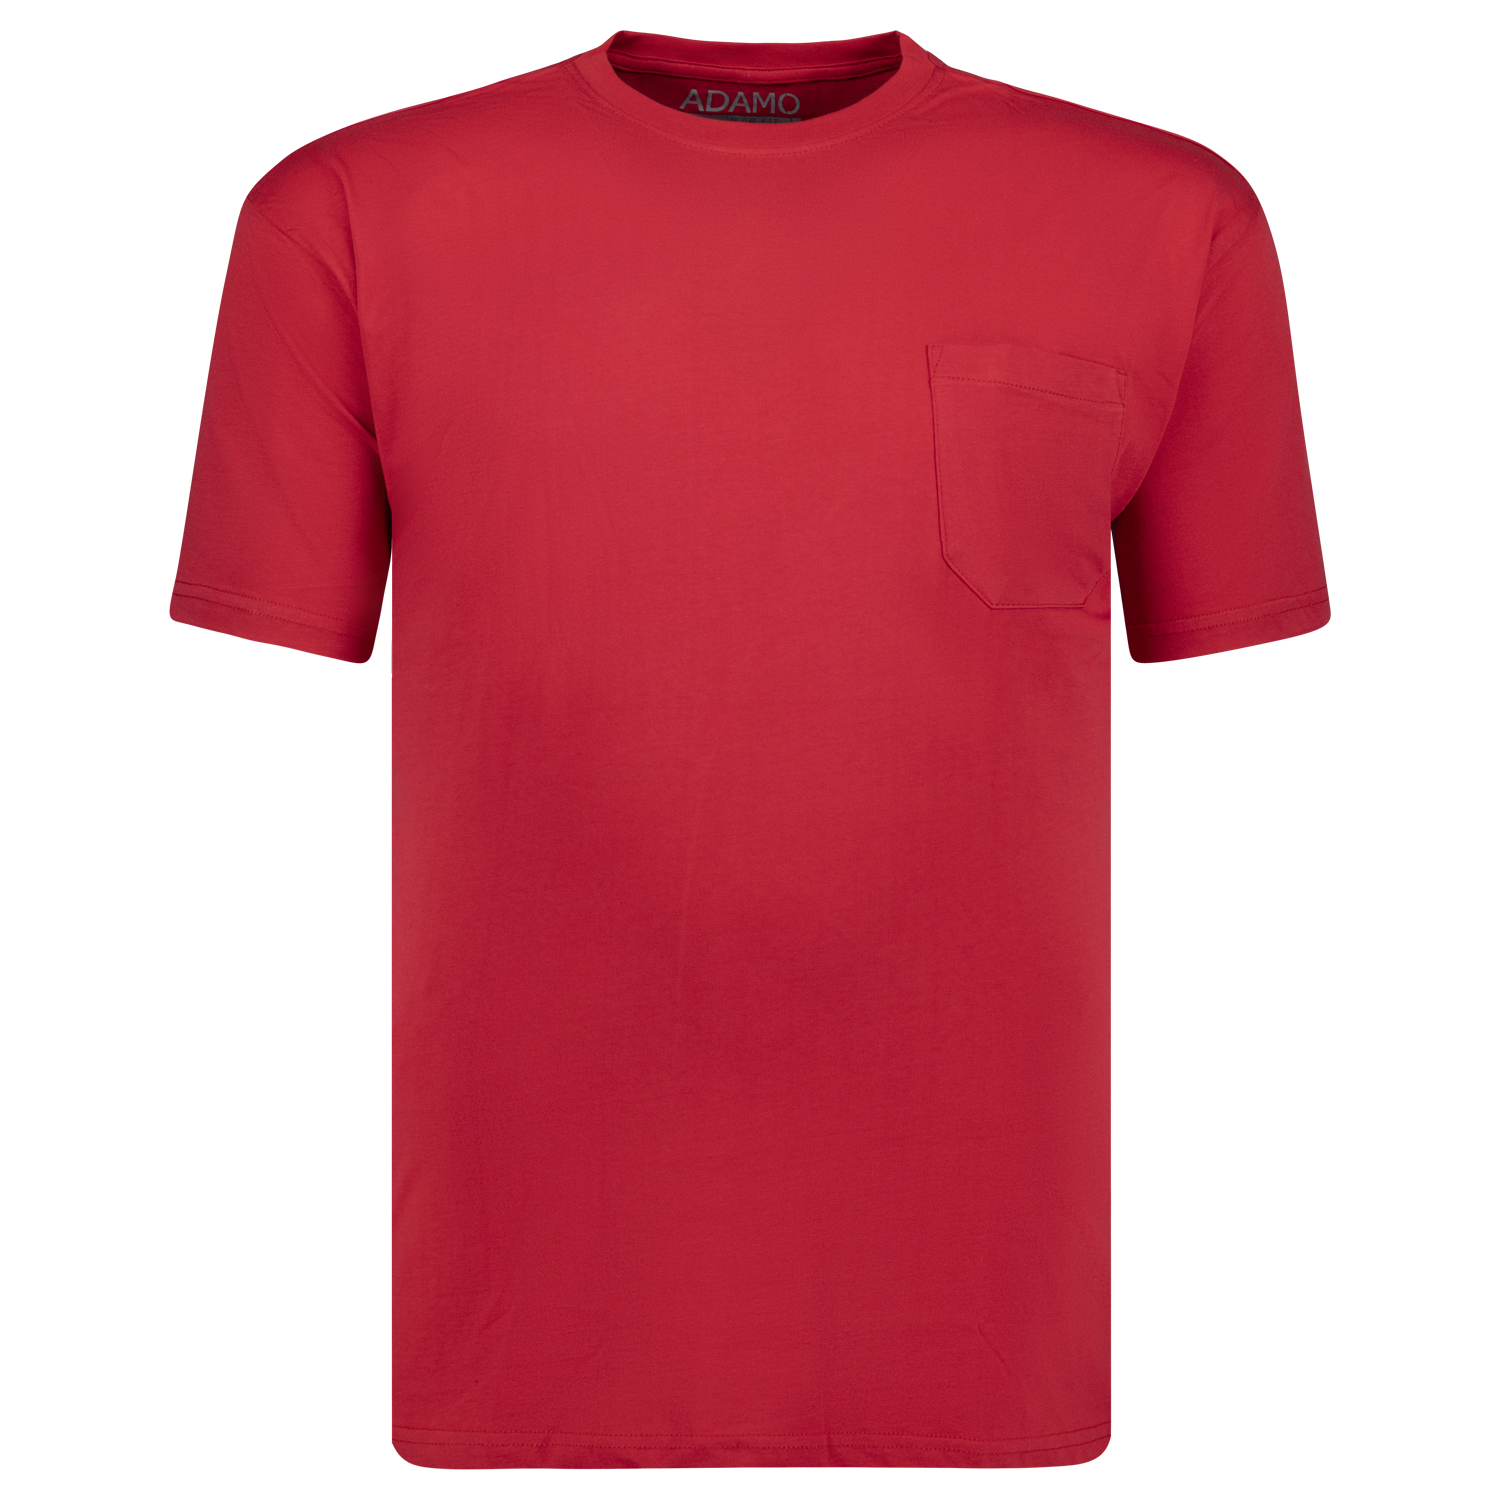 Rotes Herren Übergrößen Shirt 2XL-10XL von ADAMO Modell Kody mit Brusttasche